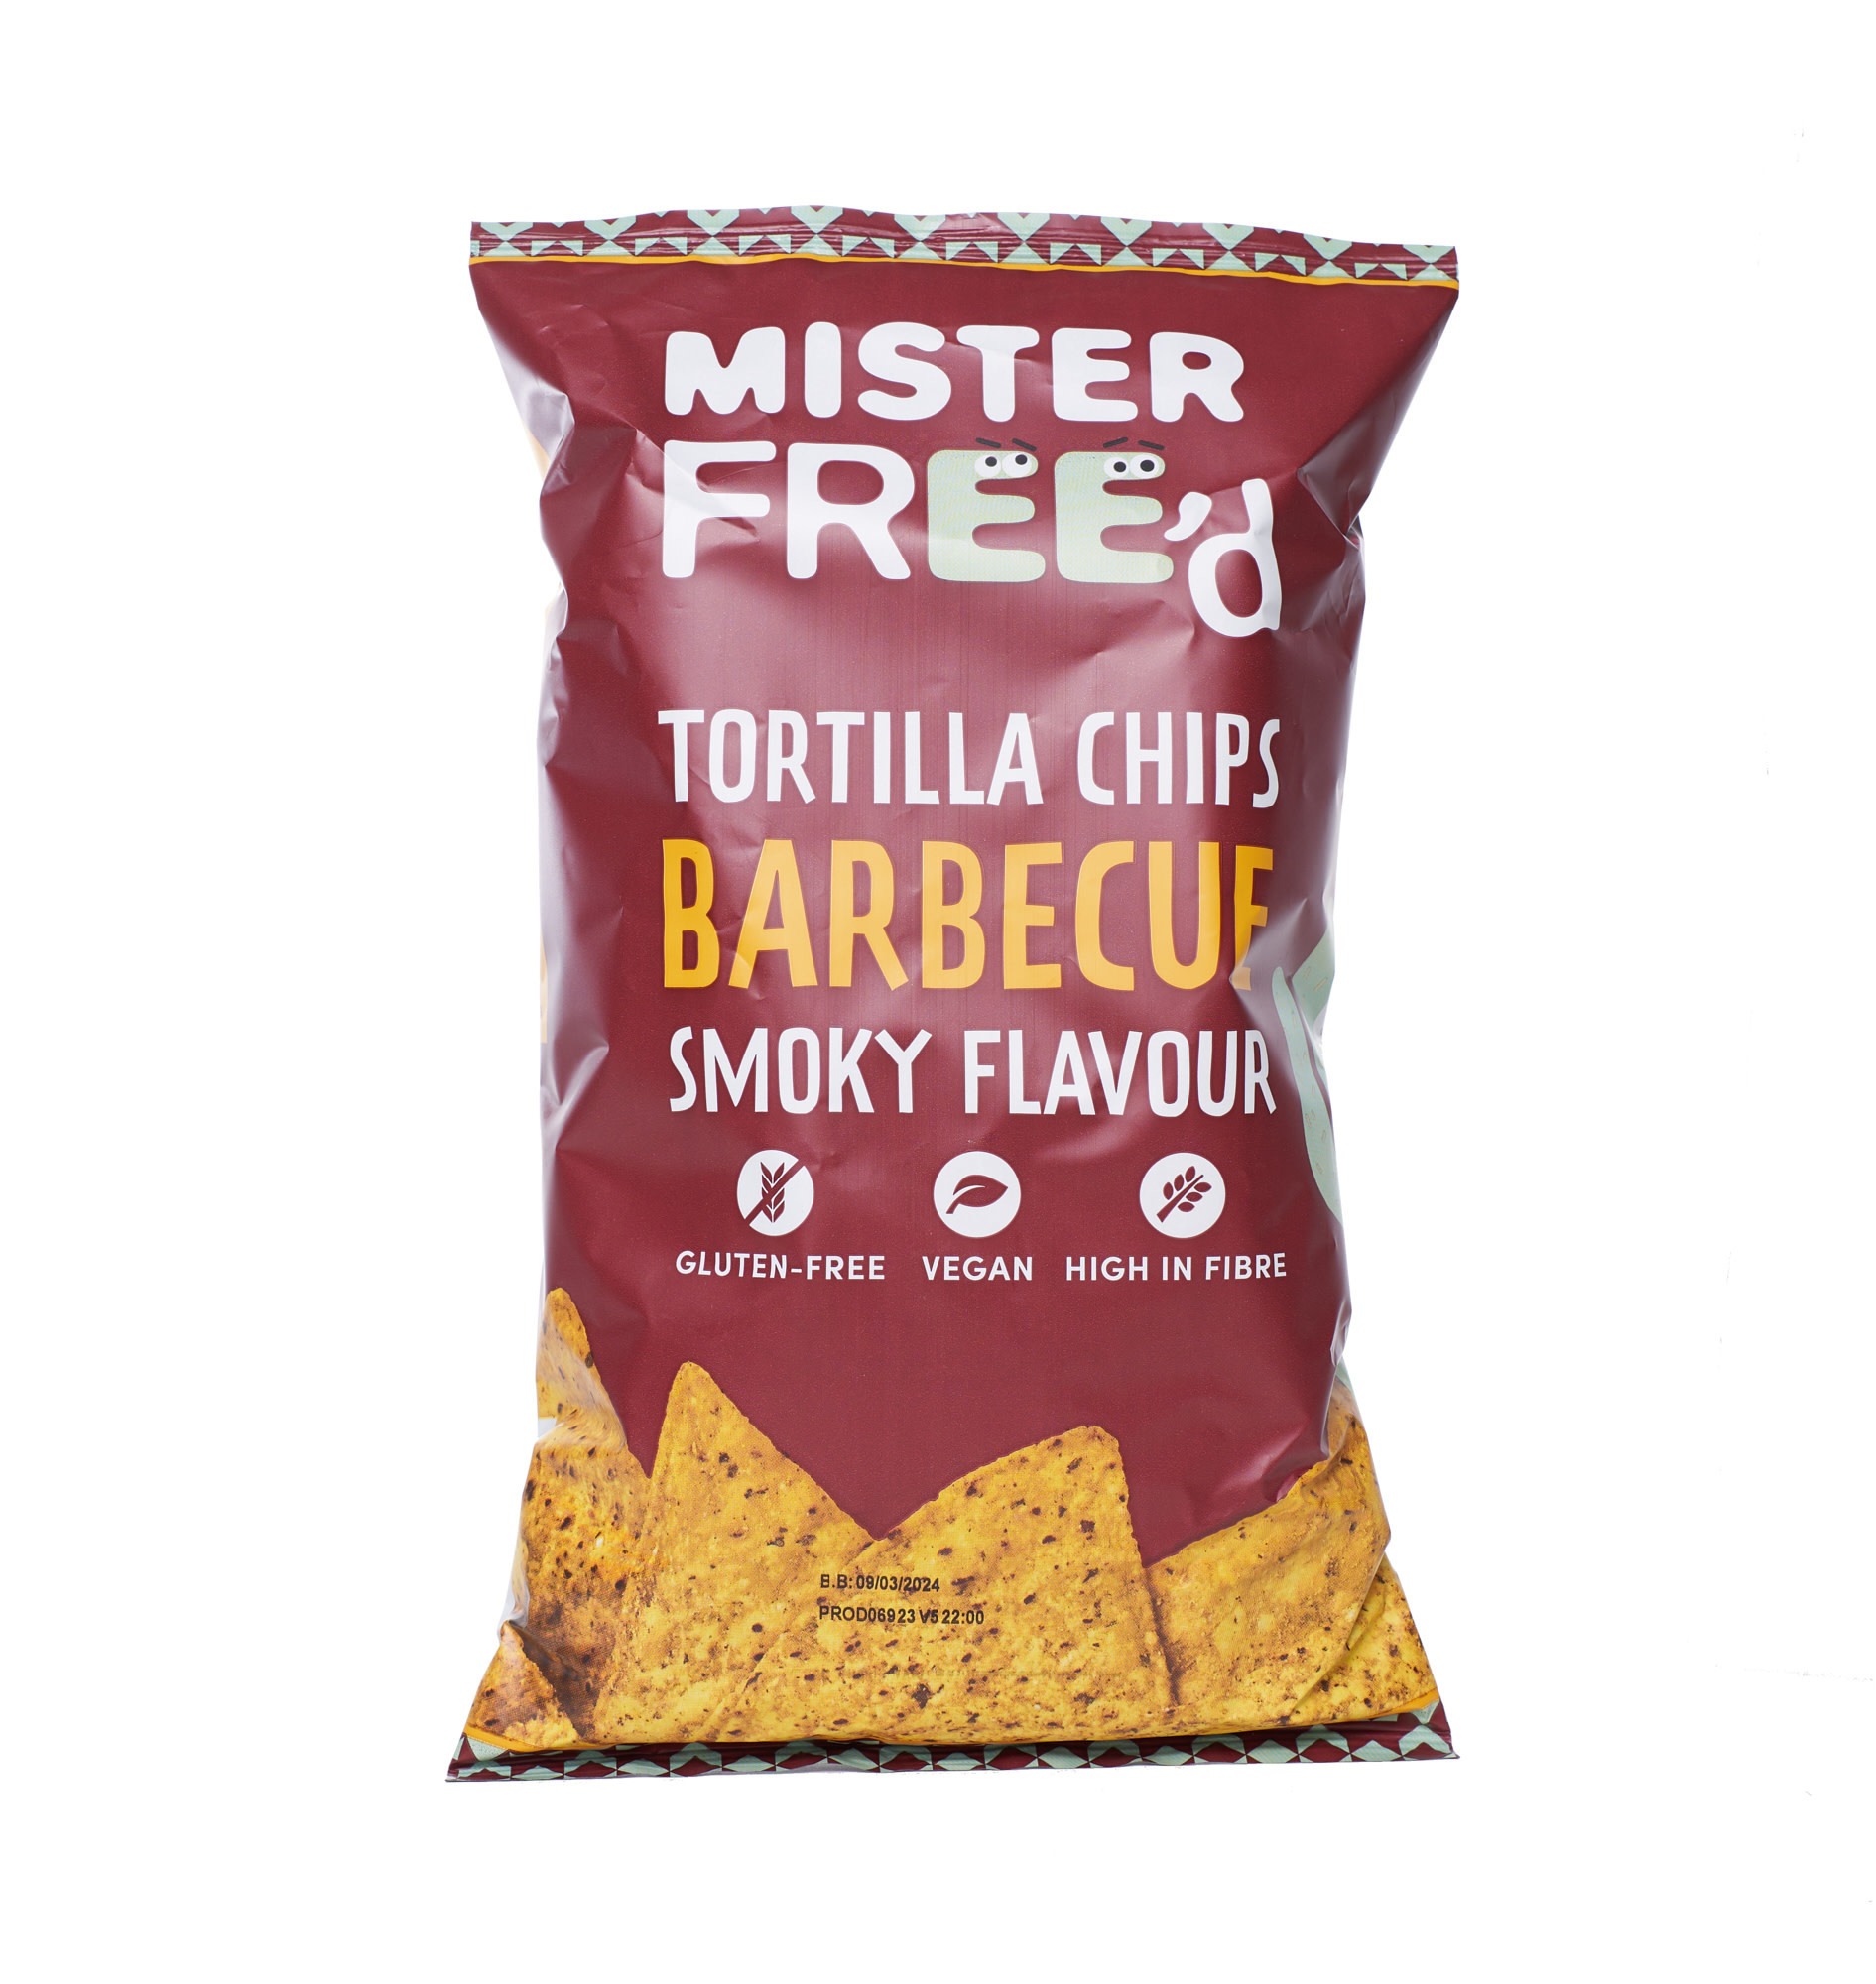 MISTER FREE'd Tortilla Chips - BBQ